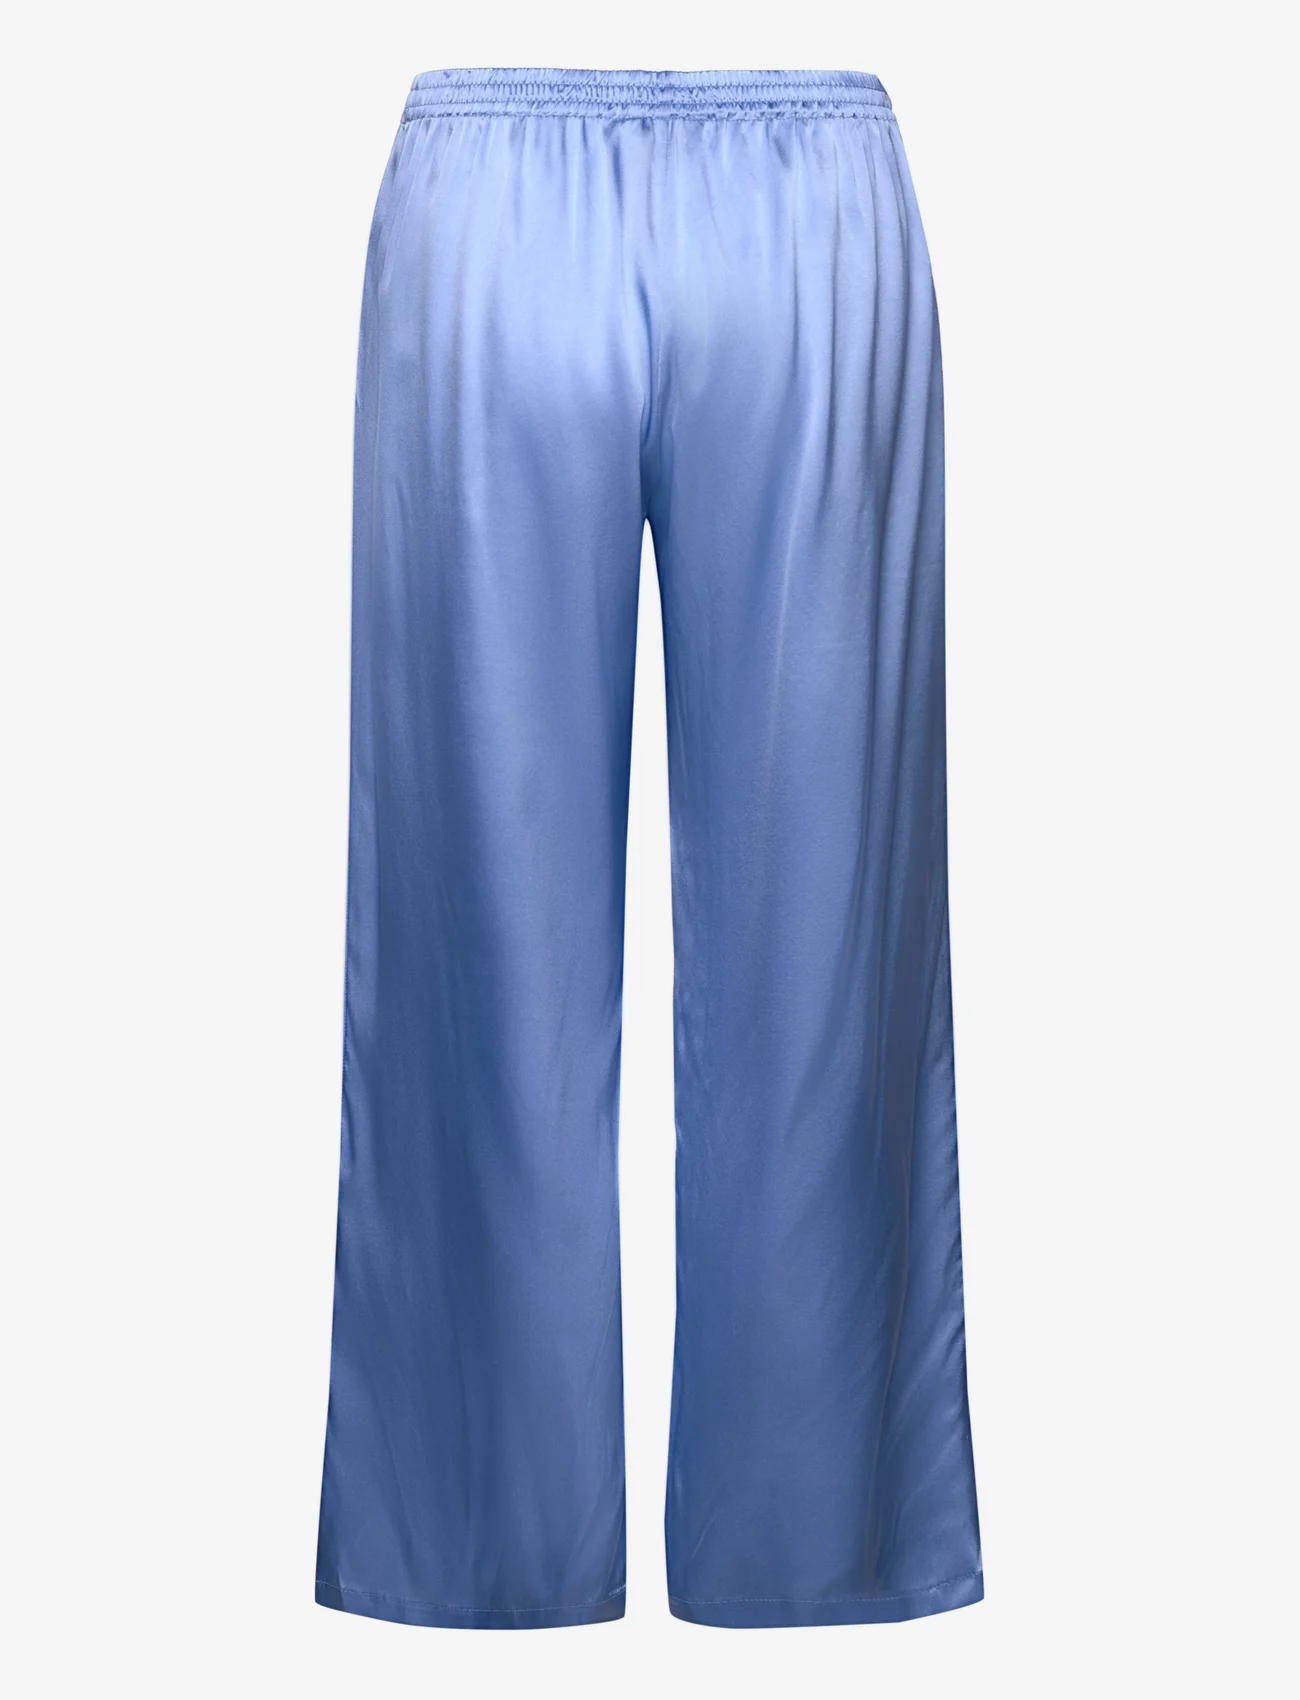 Rosemunde - Trousers - laia säärega püksid - blue heaven - 1